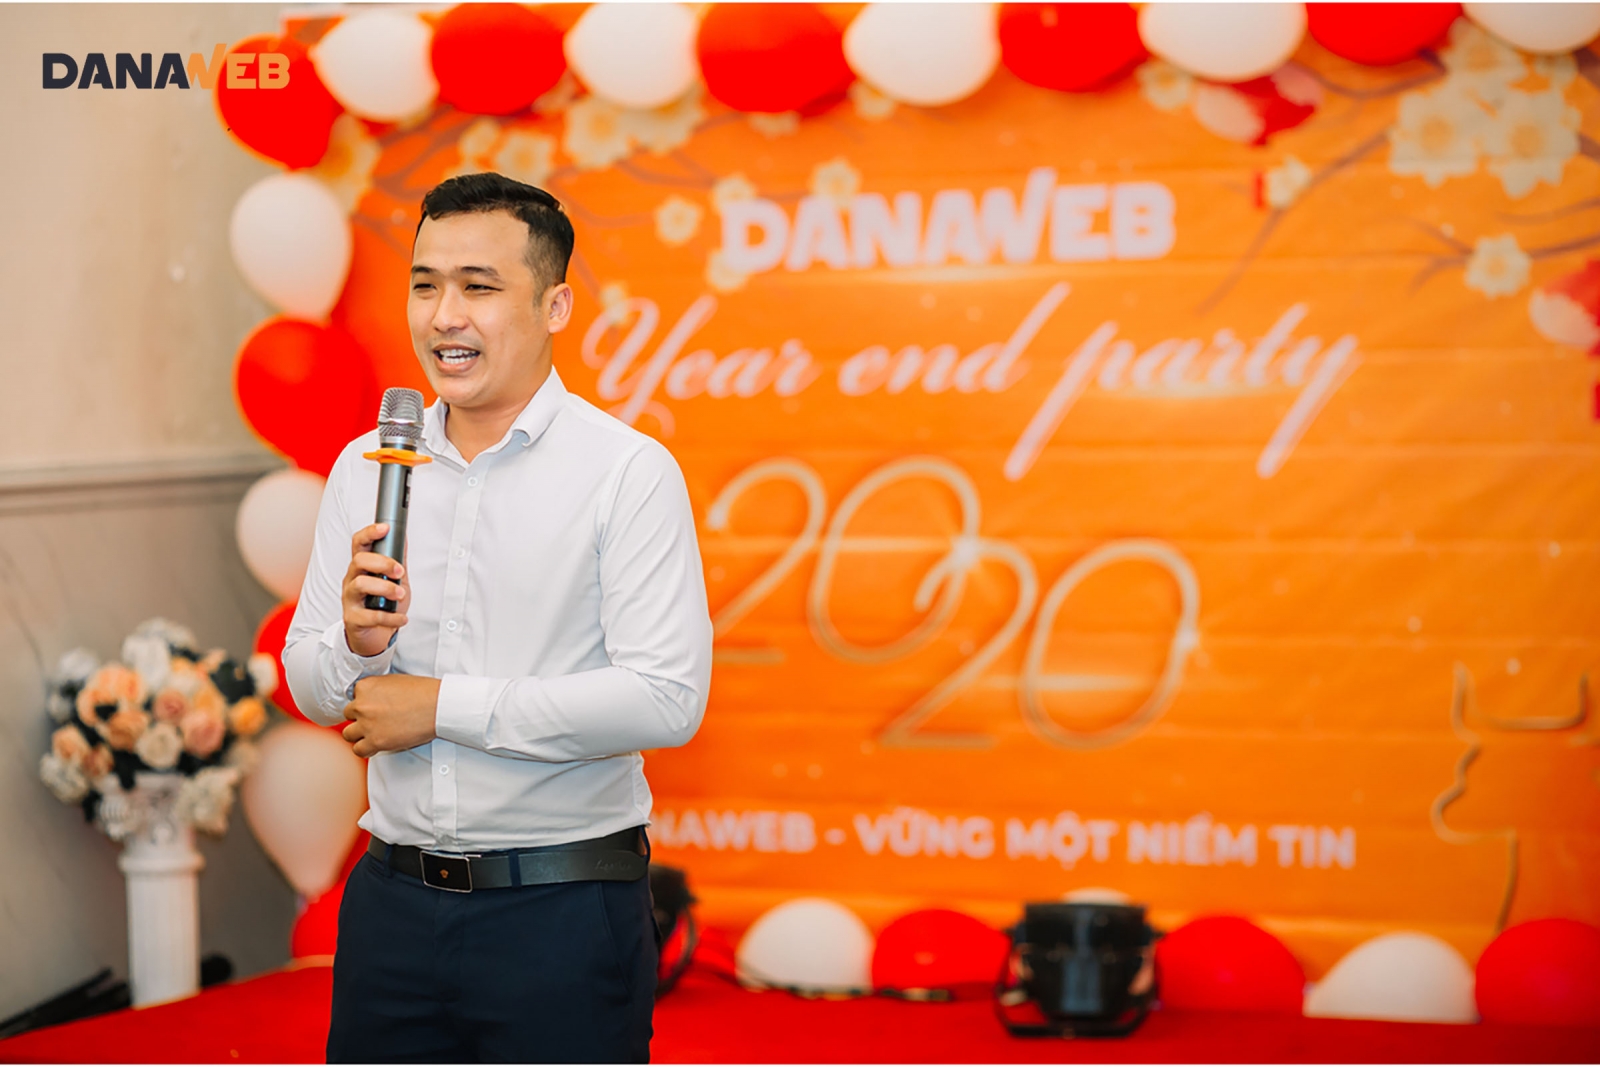 PGĐ. Kỹ thuật - anh Tô Thái Huy phát biểu, gửi lời cảm ơn và chúc tết đến toàn thể Quý đối tác và nhân viên công ty DanaWeb